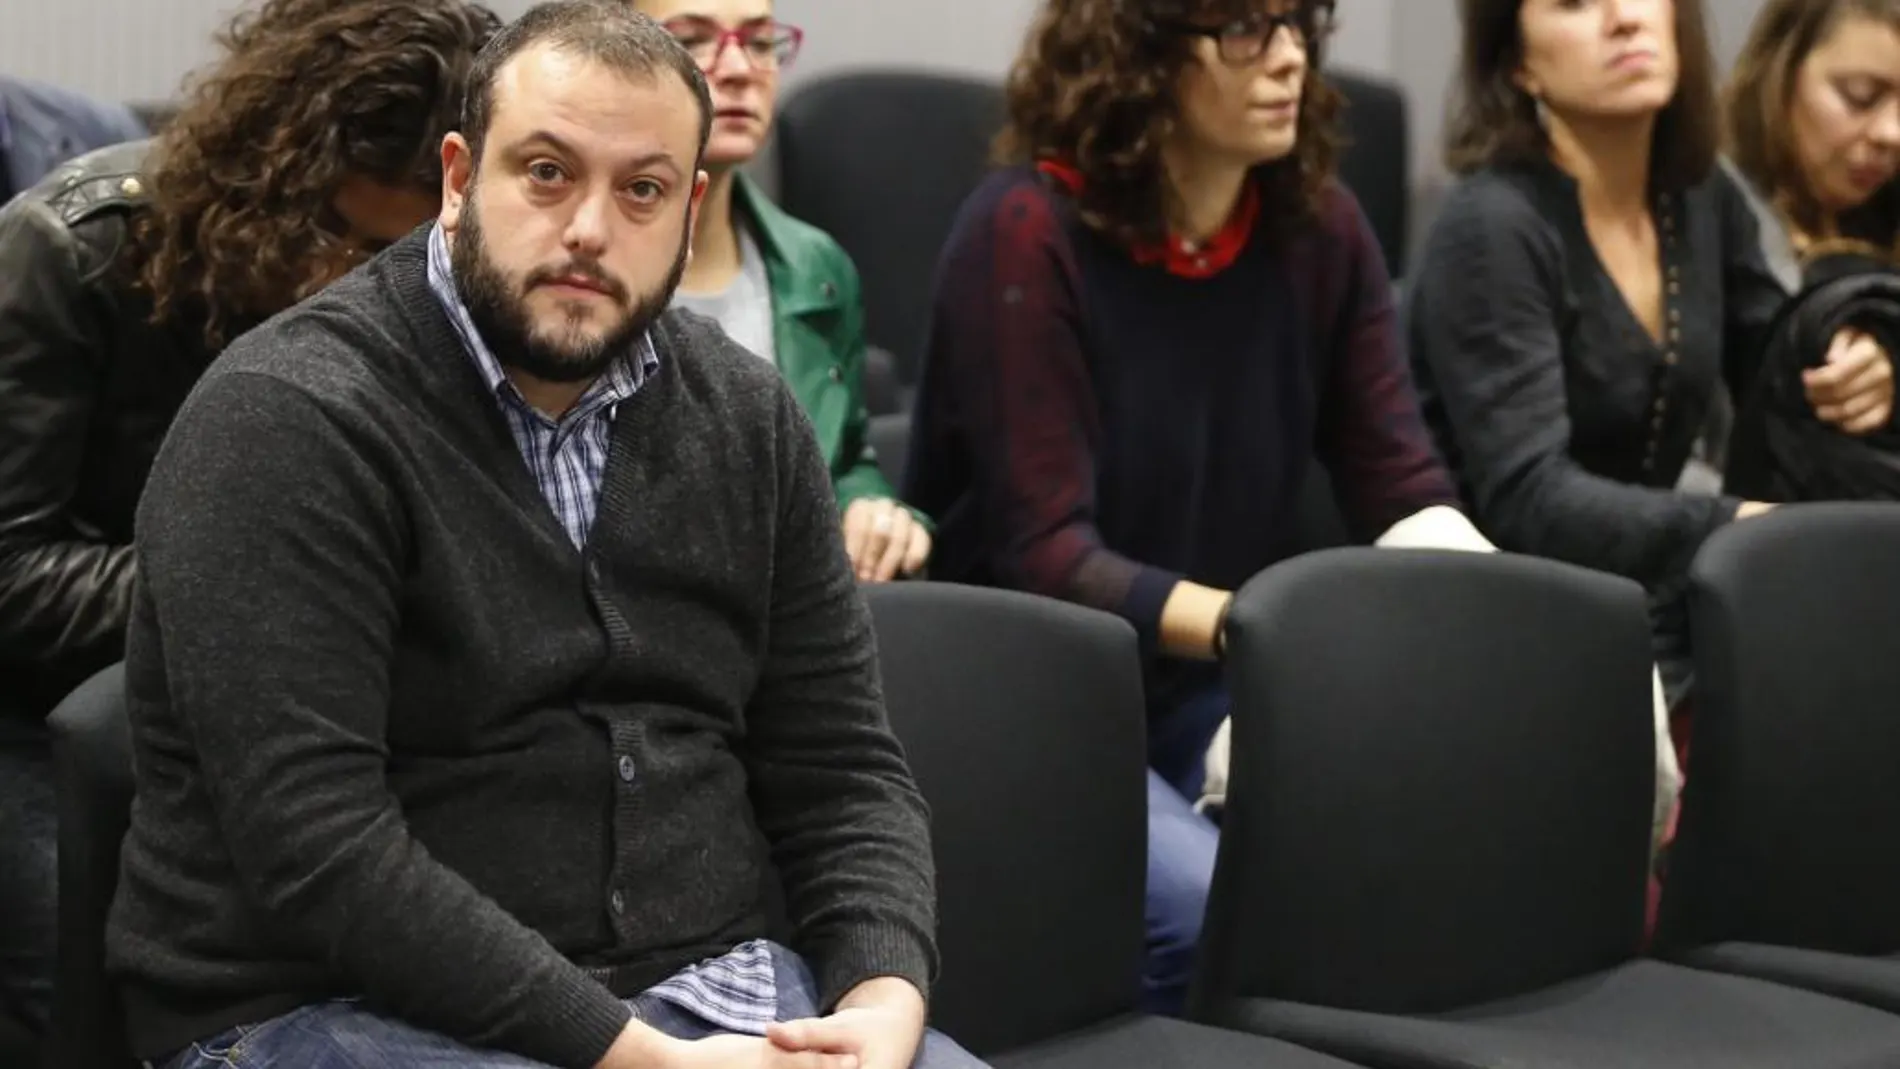 El concejal de Ahora Madrid Guillermo Zapata durante el juicio que se sigue contra él hoy en la Audiencia Nacional por el tuit que publicó sobre Irene Villa en 2011